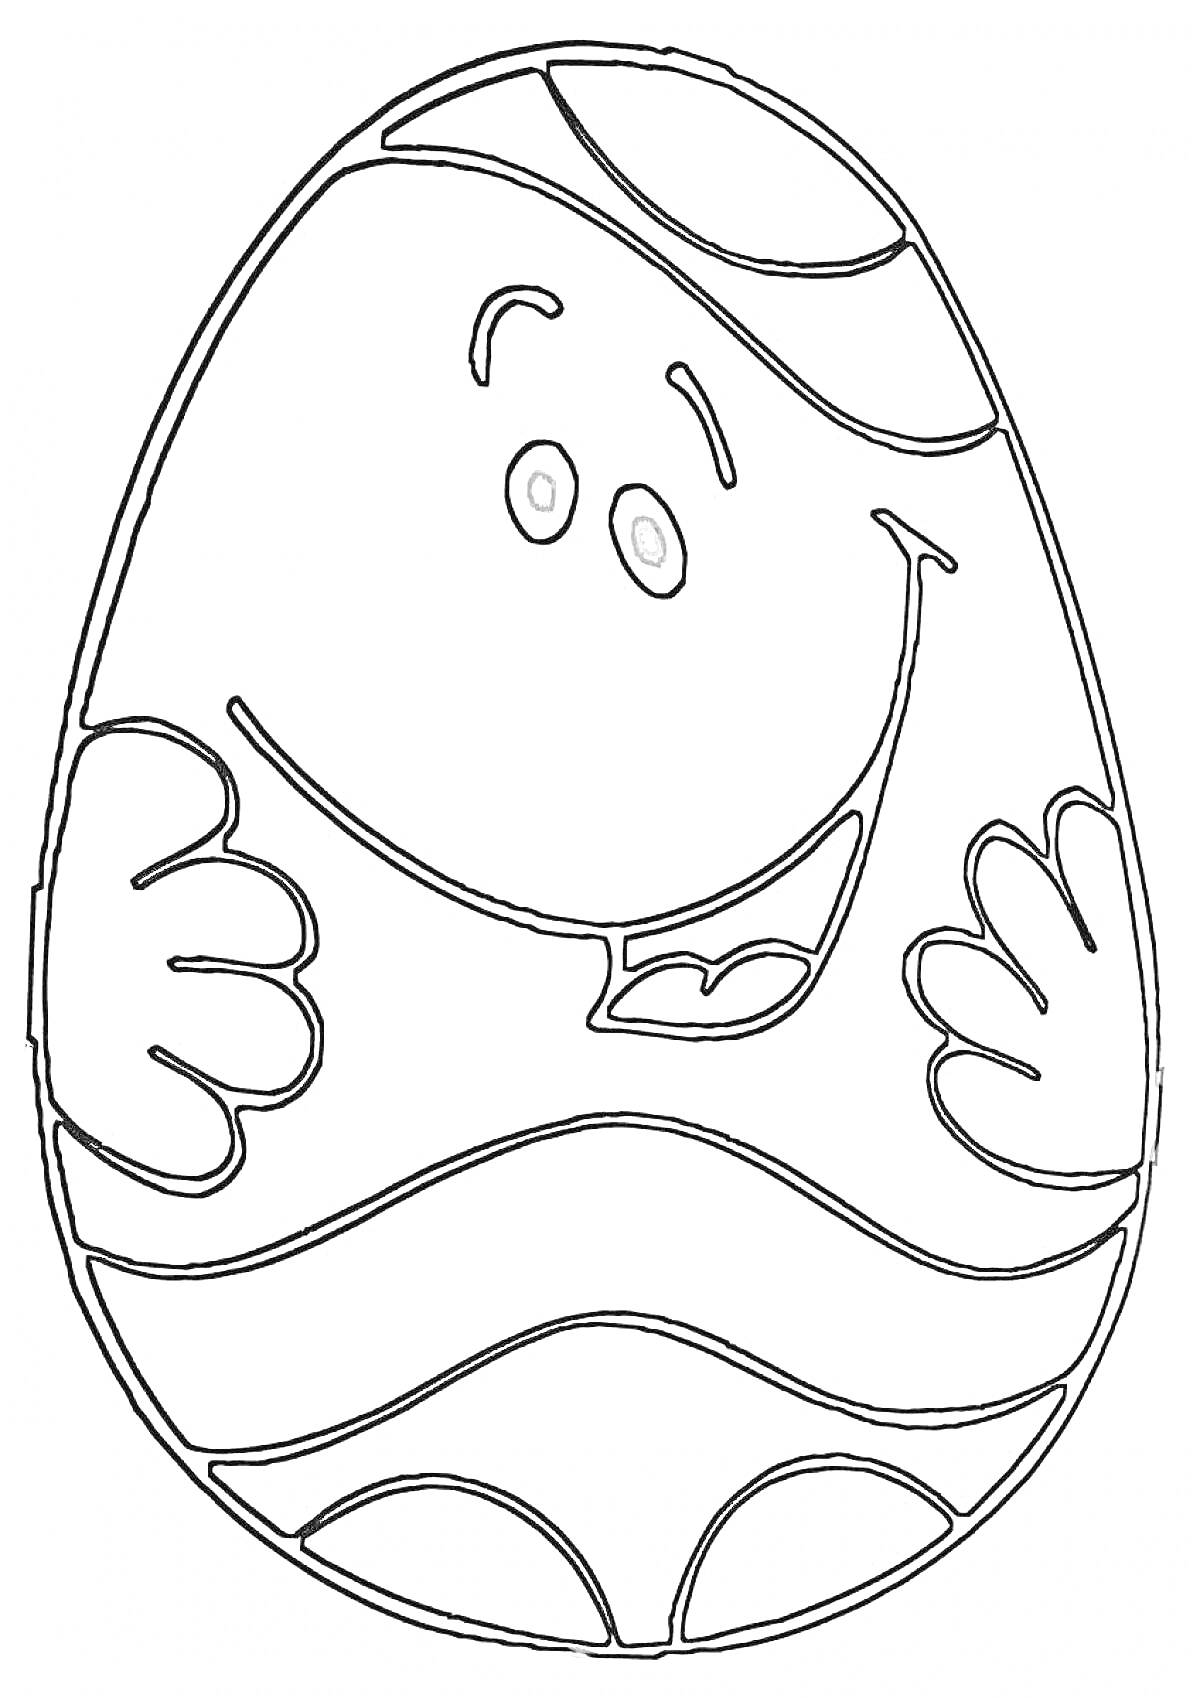 Яйцо Киндер с лицом и руками